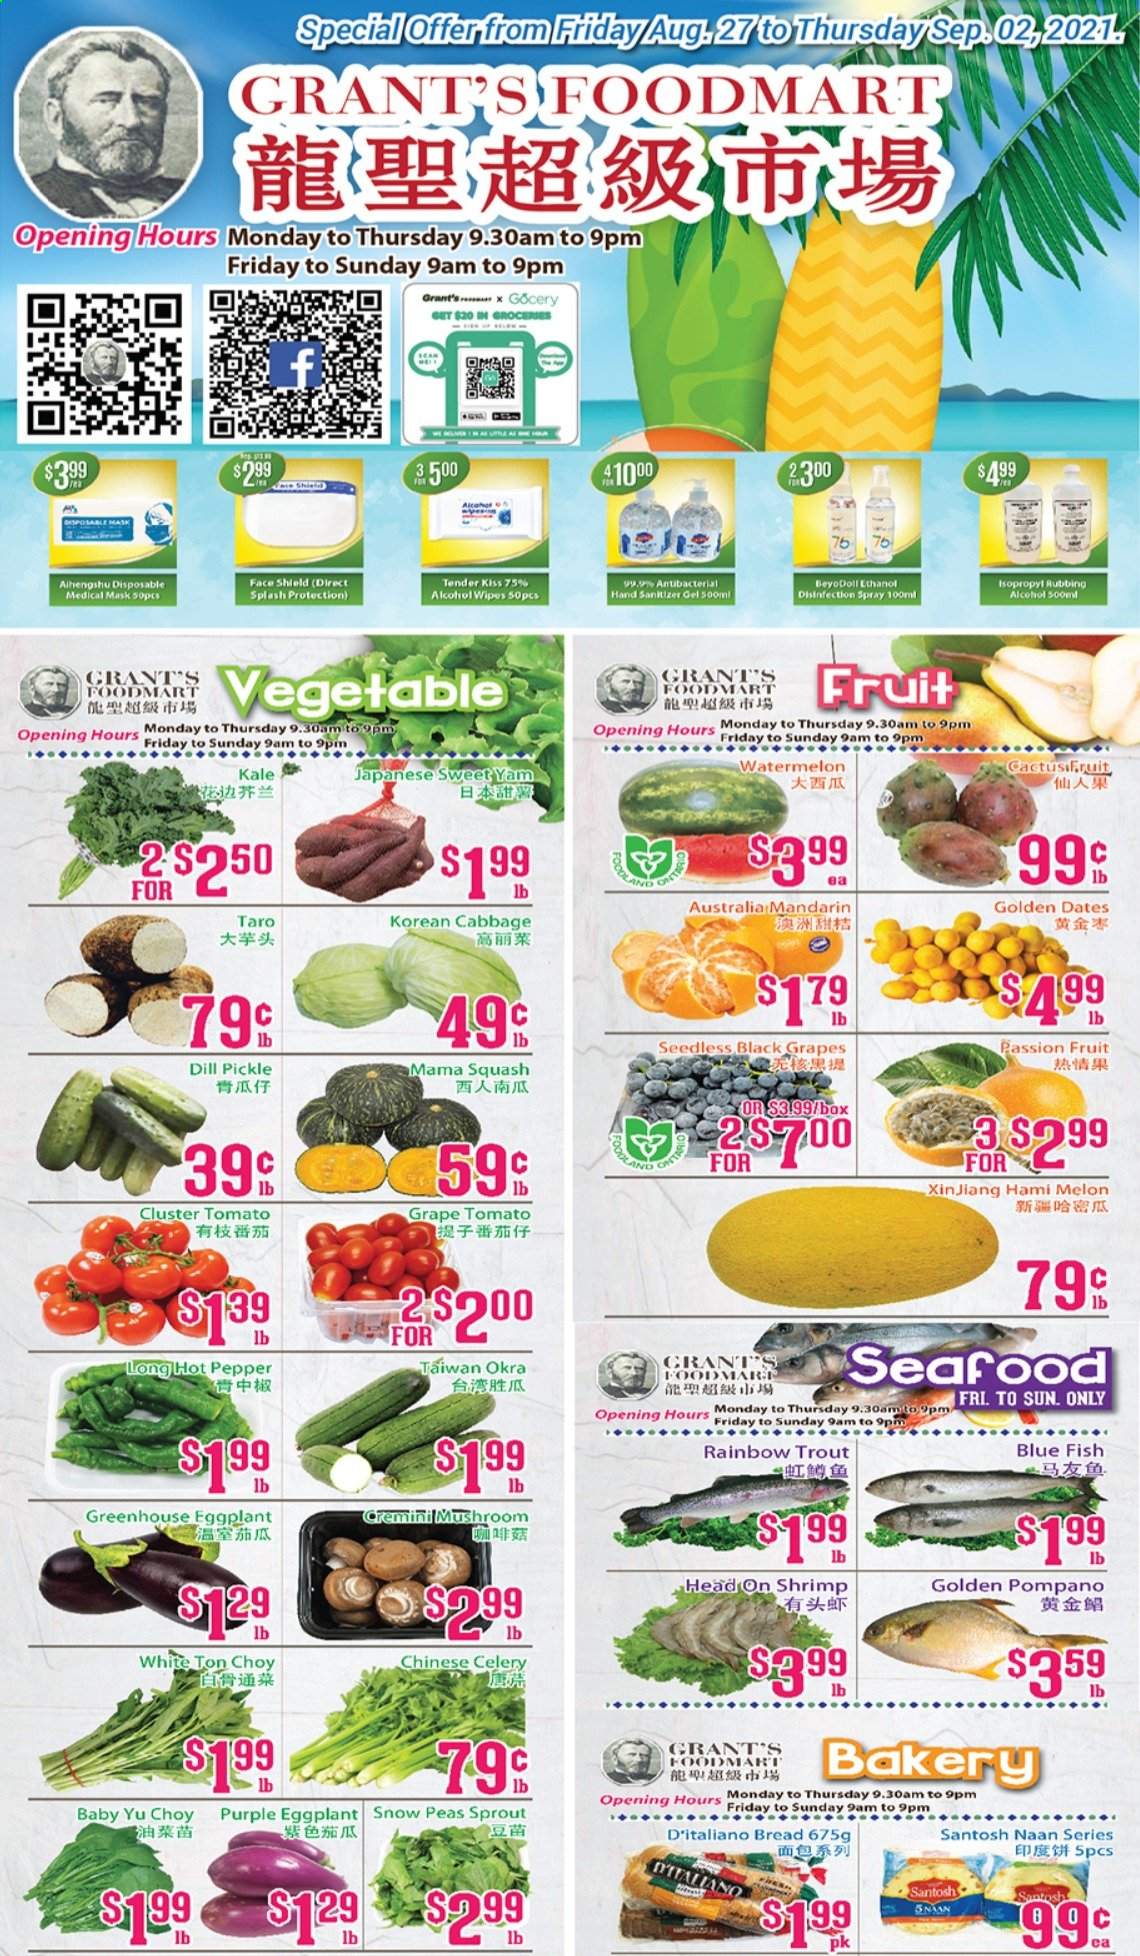 Grant's Foodmart flyer  - August 27, 2021 - September 02, 2021.